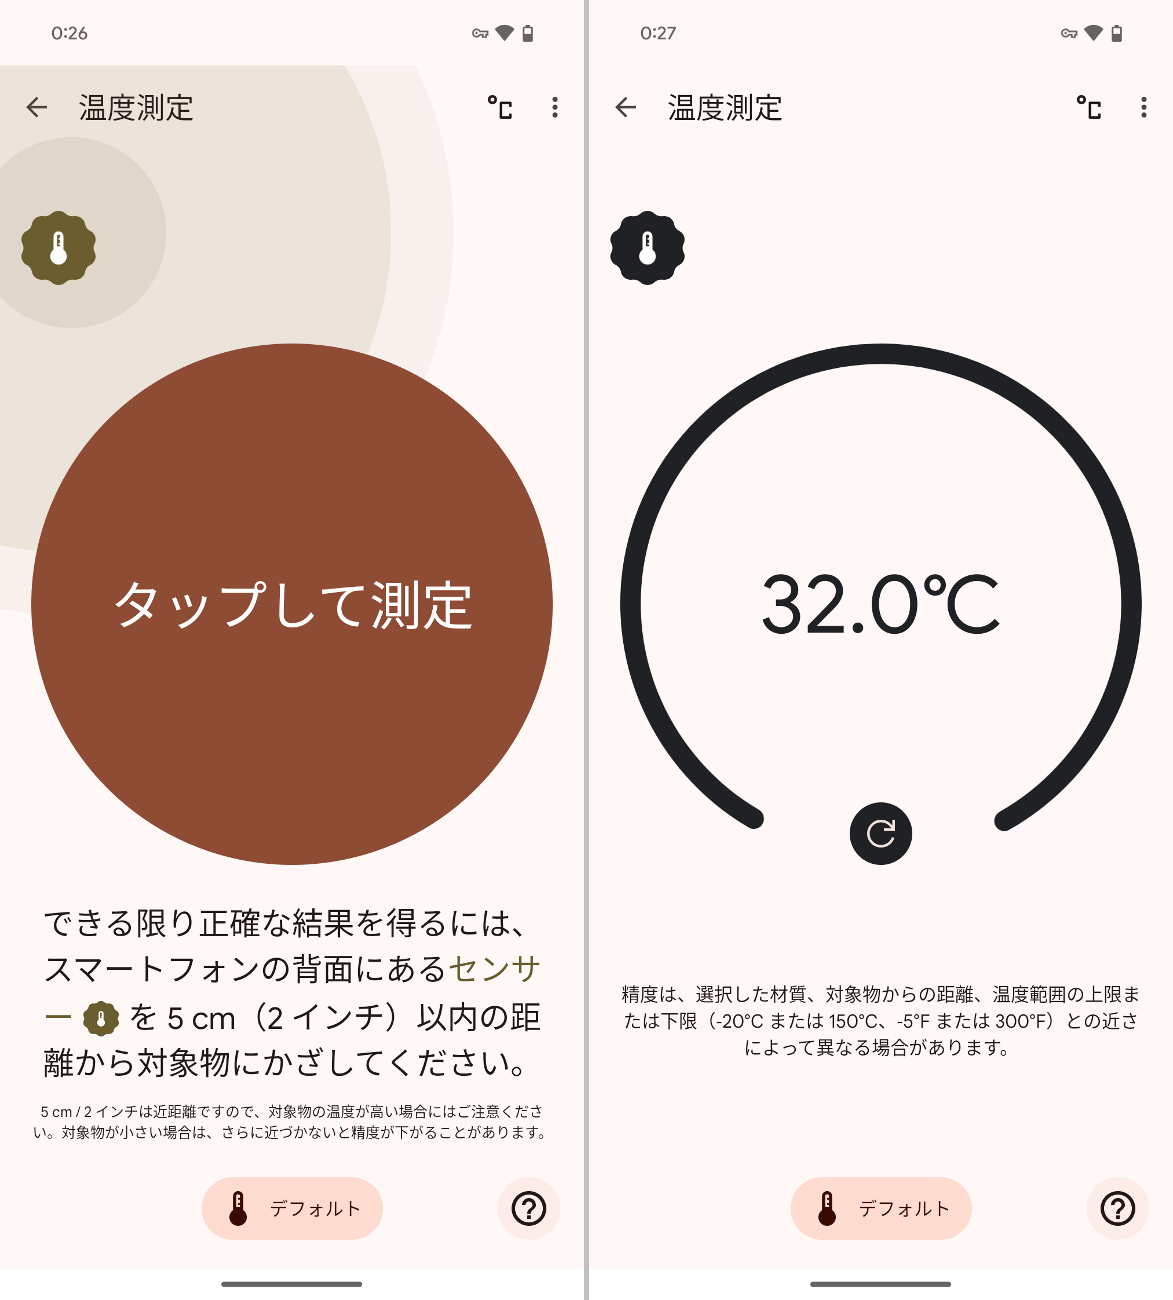 温度を測定するには対象から約5cmの距離に近づく必要があります（左）もっともこのデータをほかのアプリが利用することはできないなど、用途には制限があります（右）